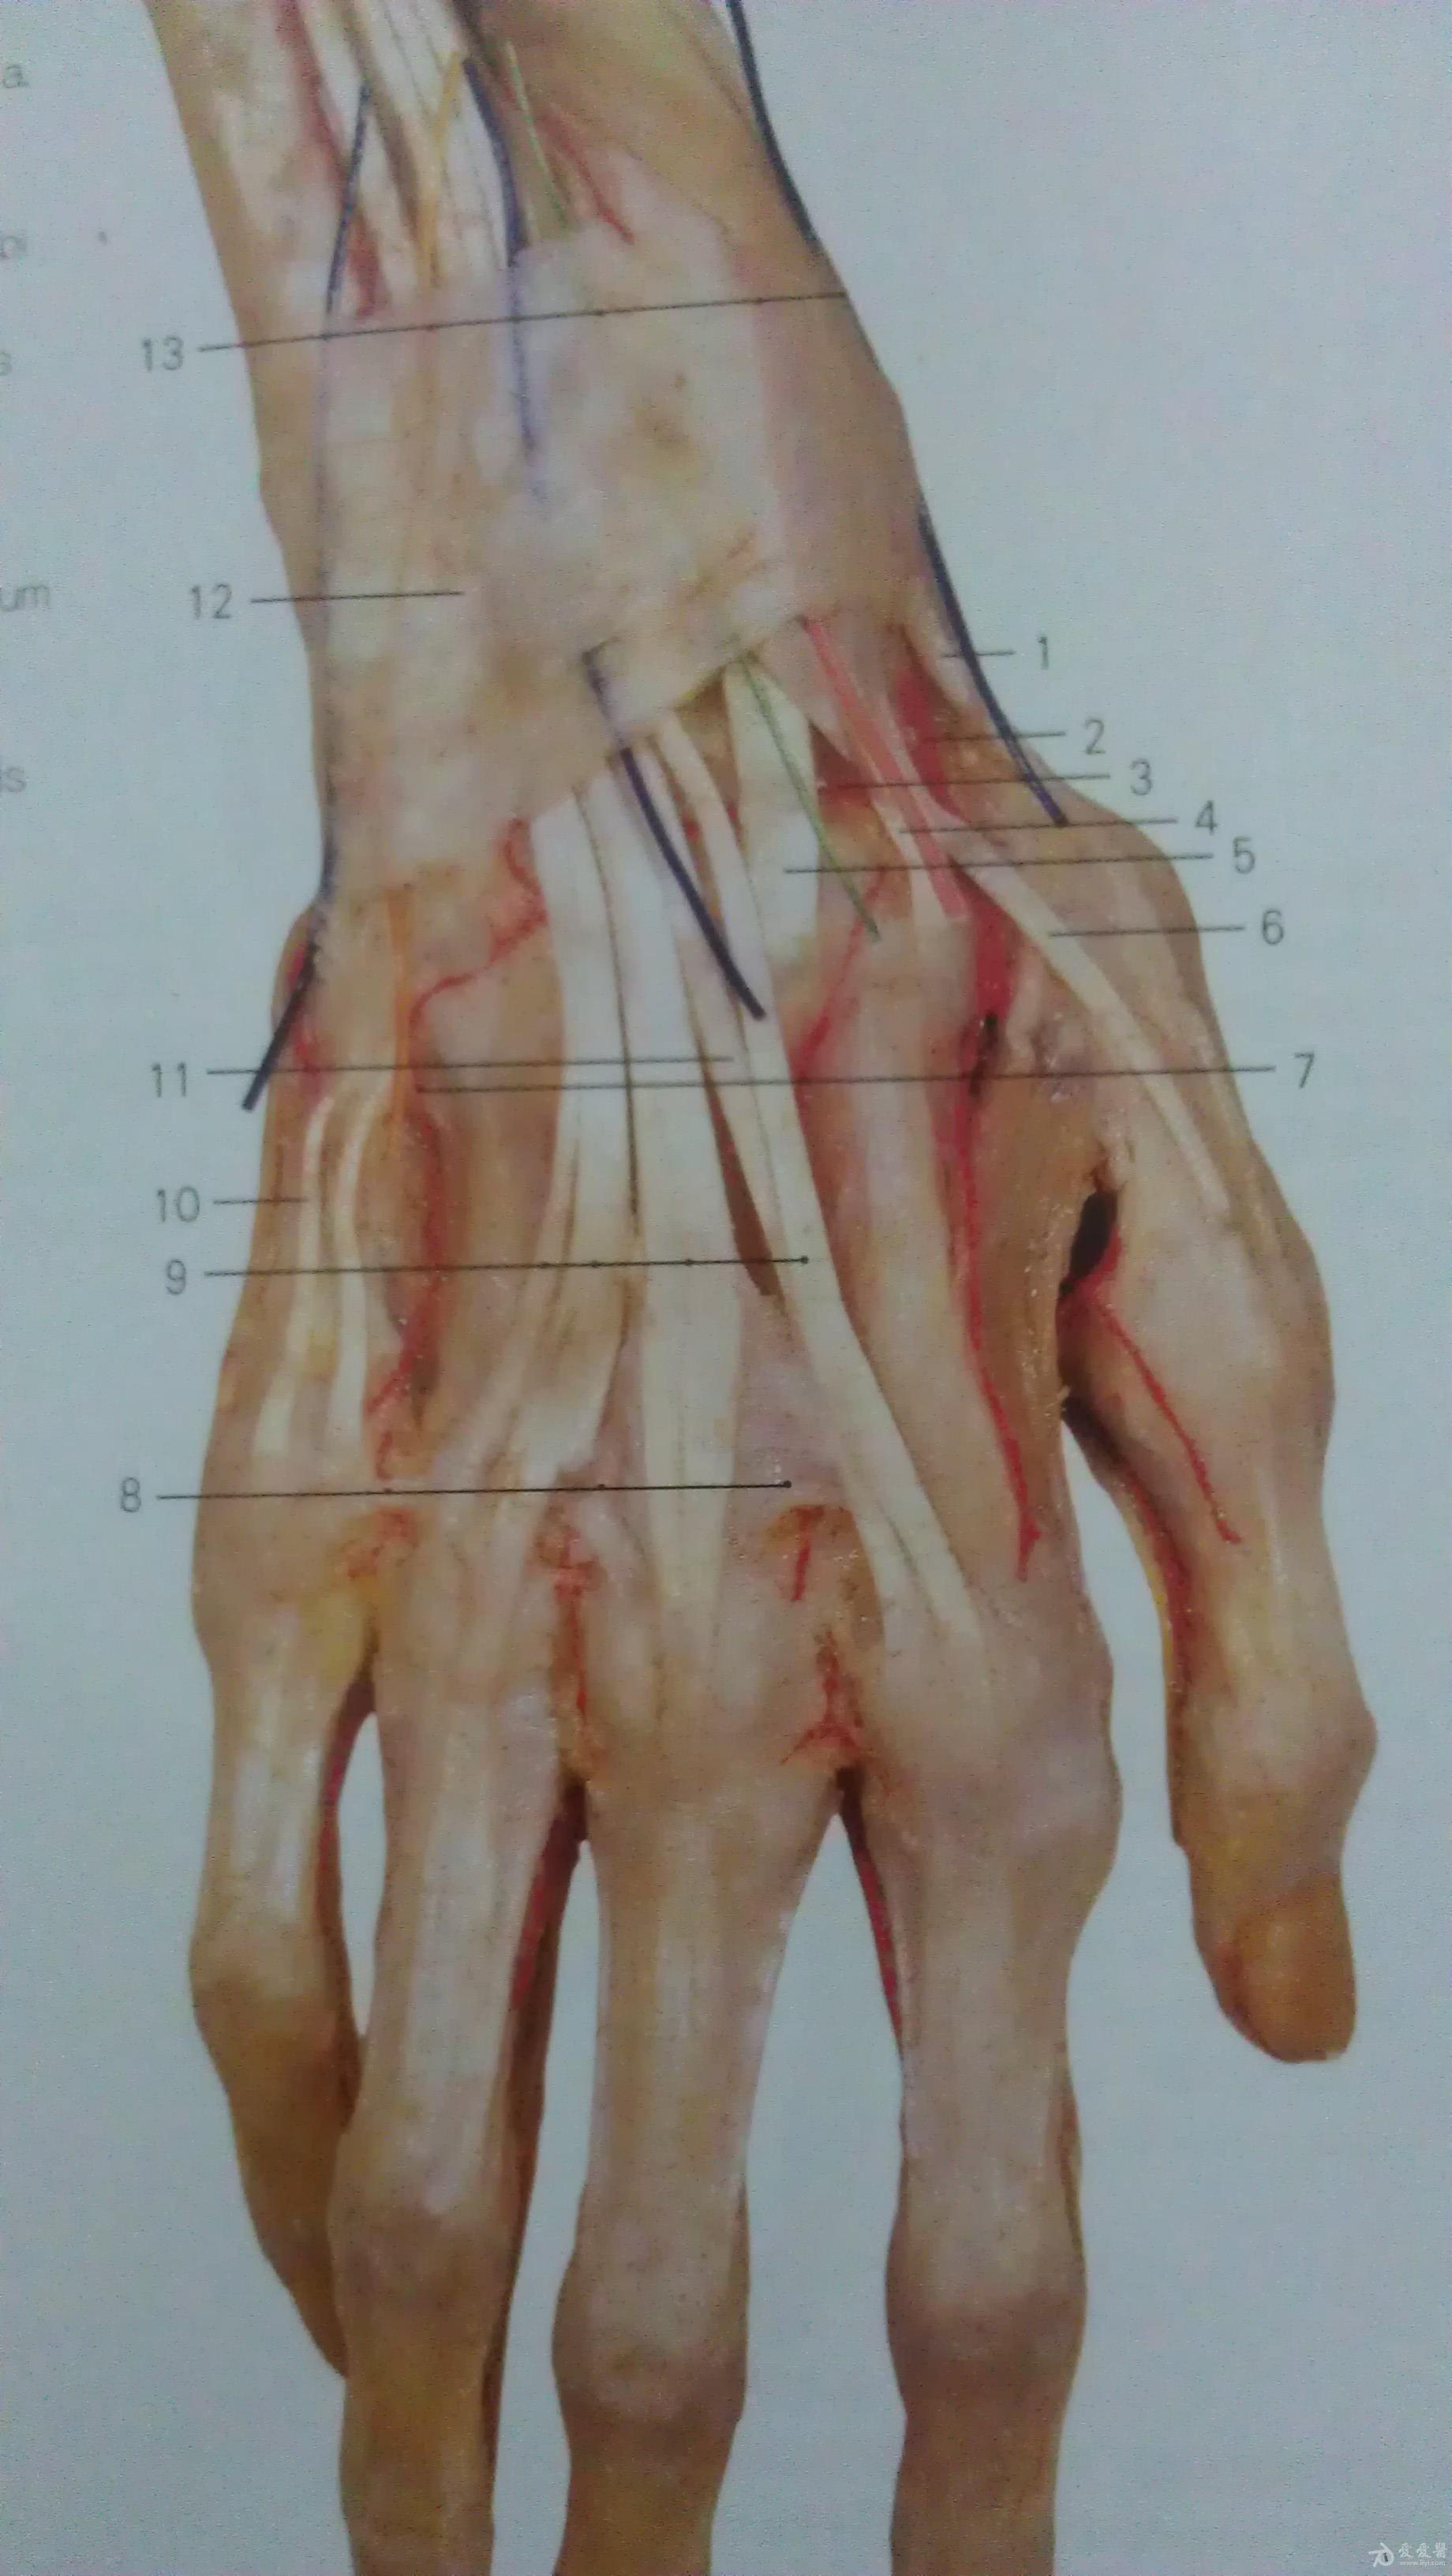 69 手部及足部血管分布图 1,头静脉 5,第一掌背动脉 7,指背静脉网 8